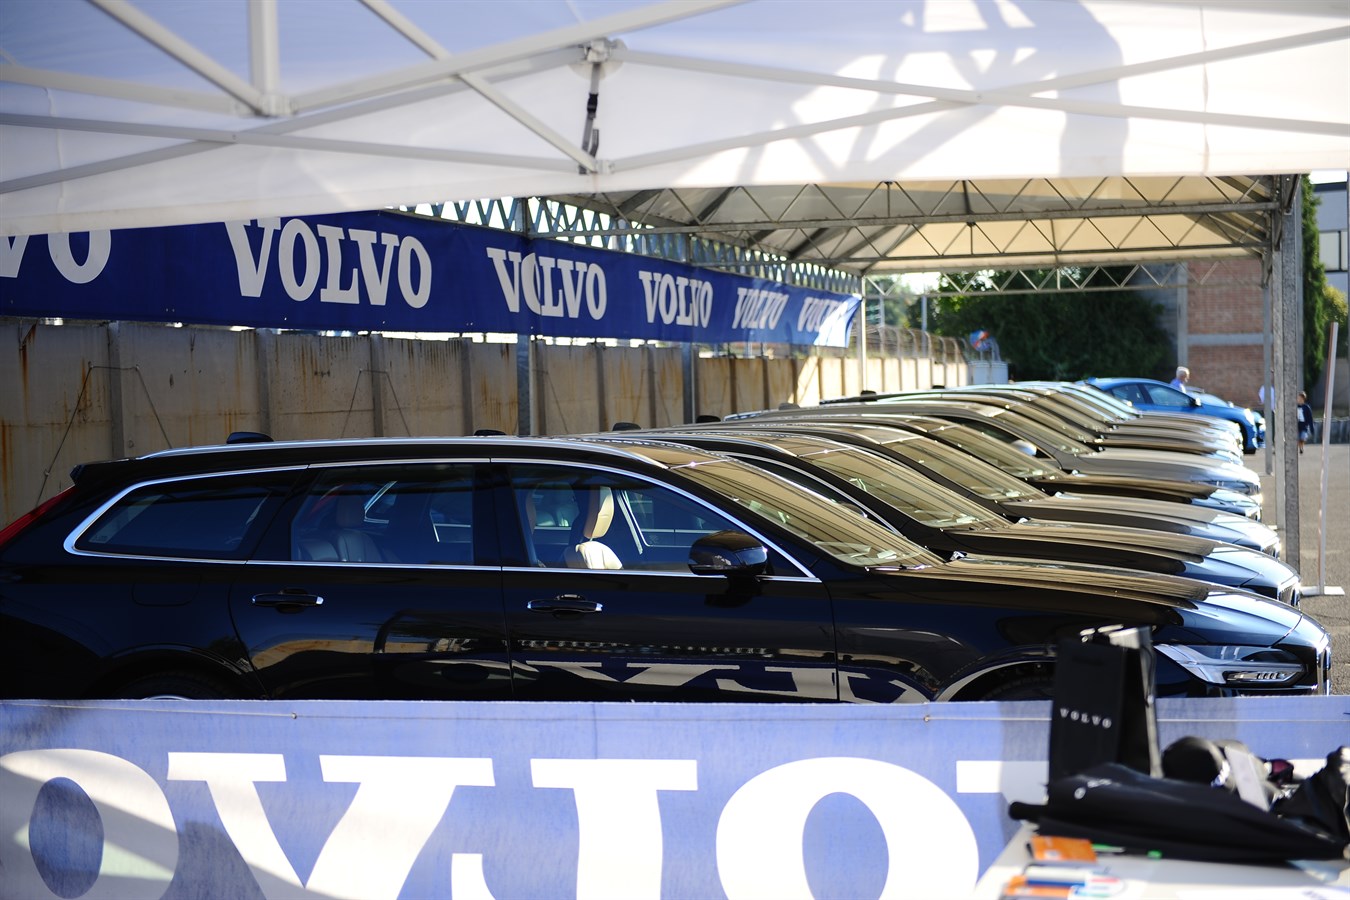 Registro Italiano Volvo d'Epoca - Raduno Annuale 2016